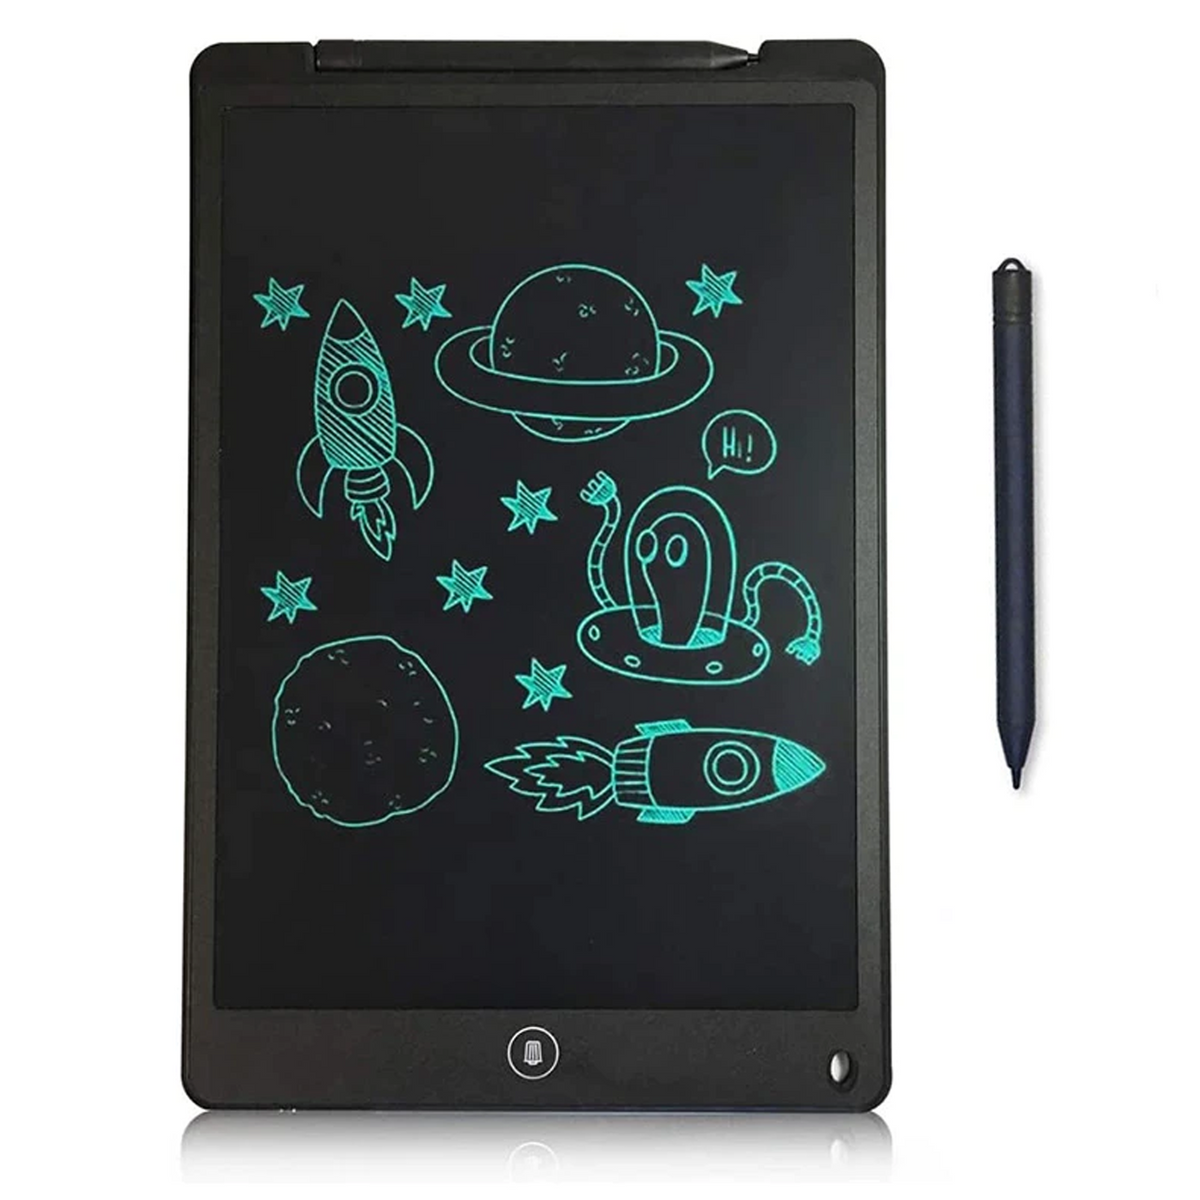 FZFLZDH Drawing Tablet Kid Light Fun Drawing Pad Luminescent Board